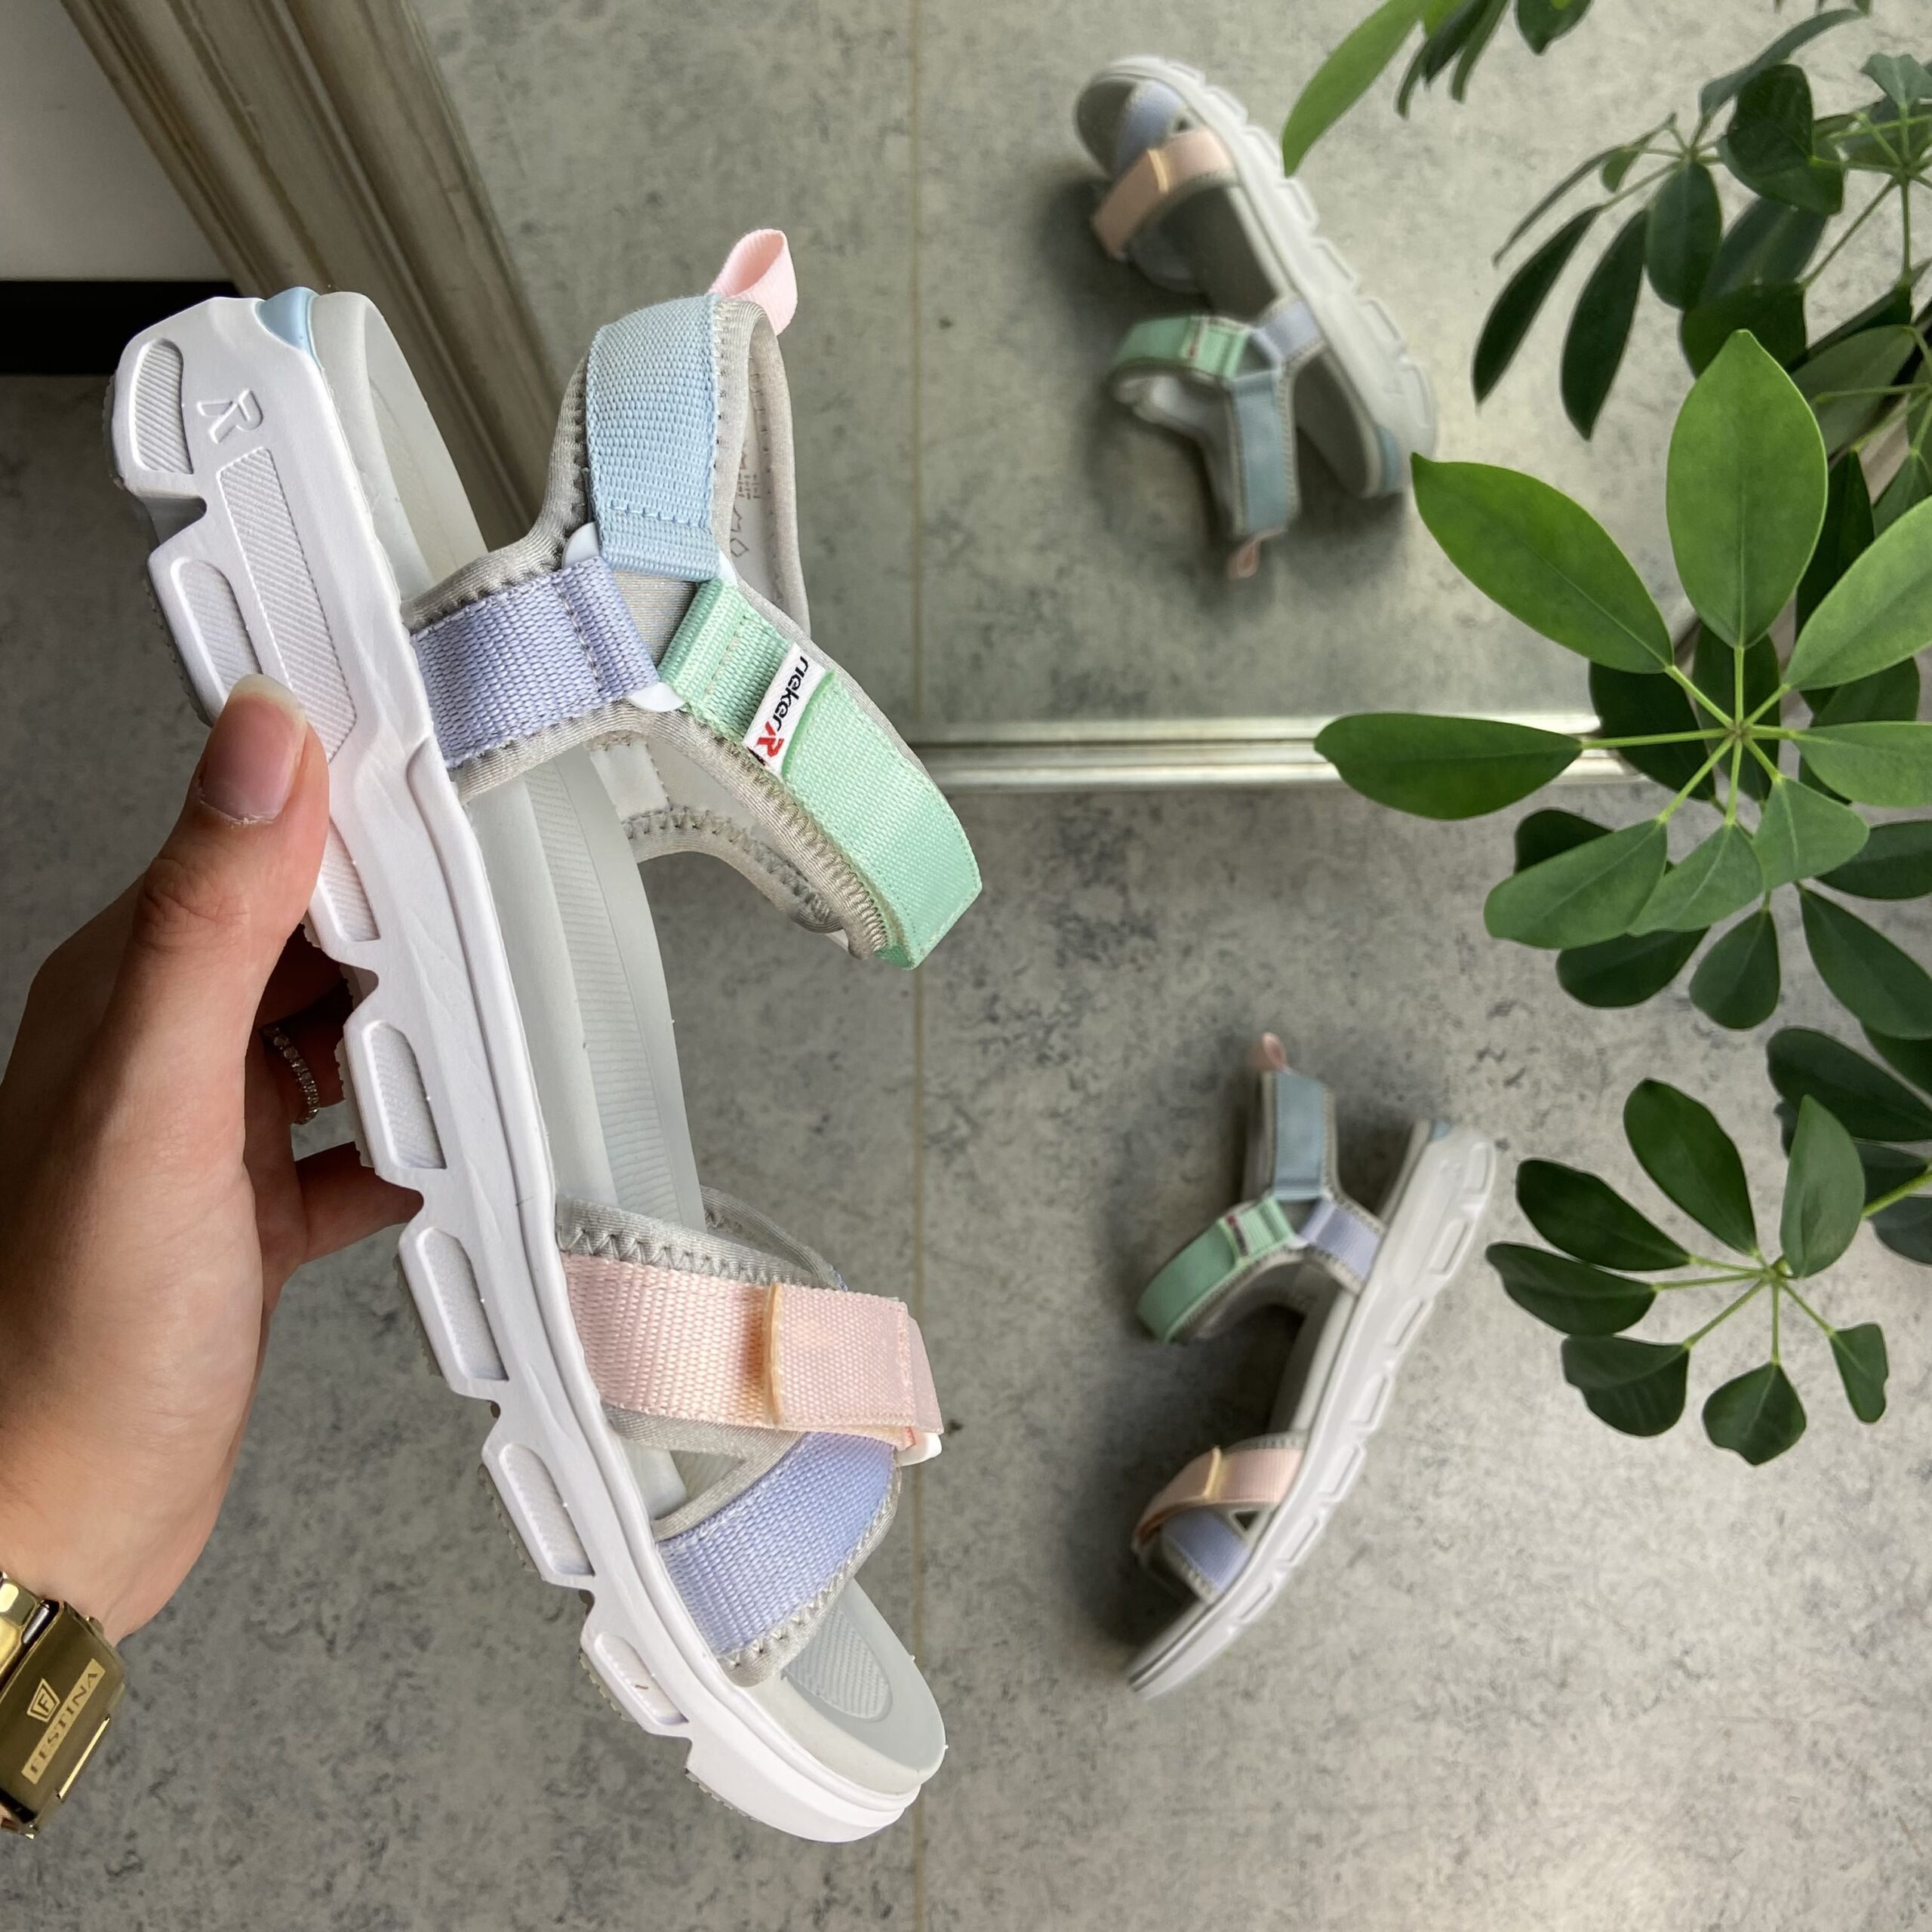 Sandal fra Rieker de flotteste farver - Sygeplejebutikken